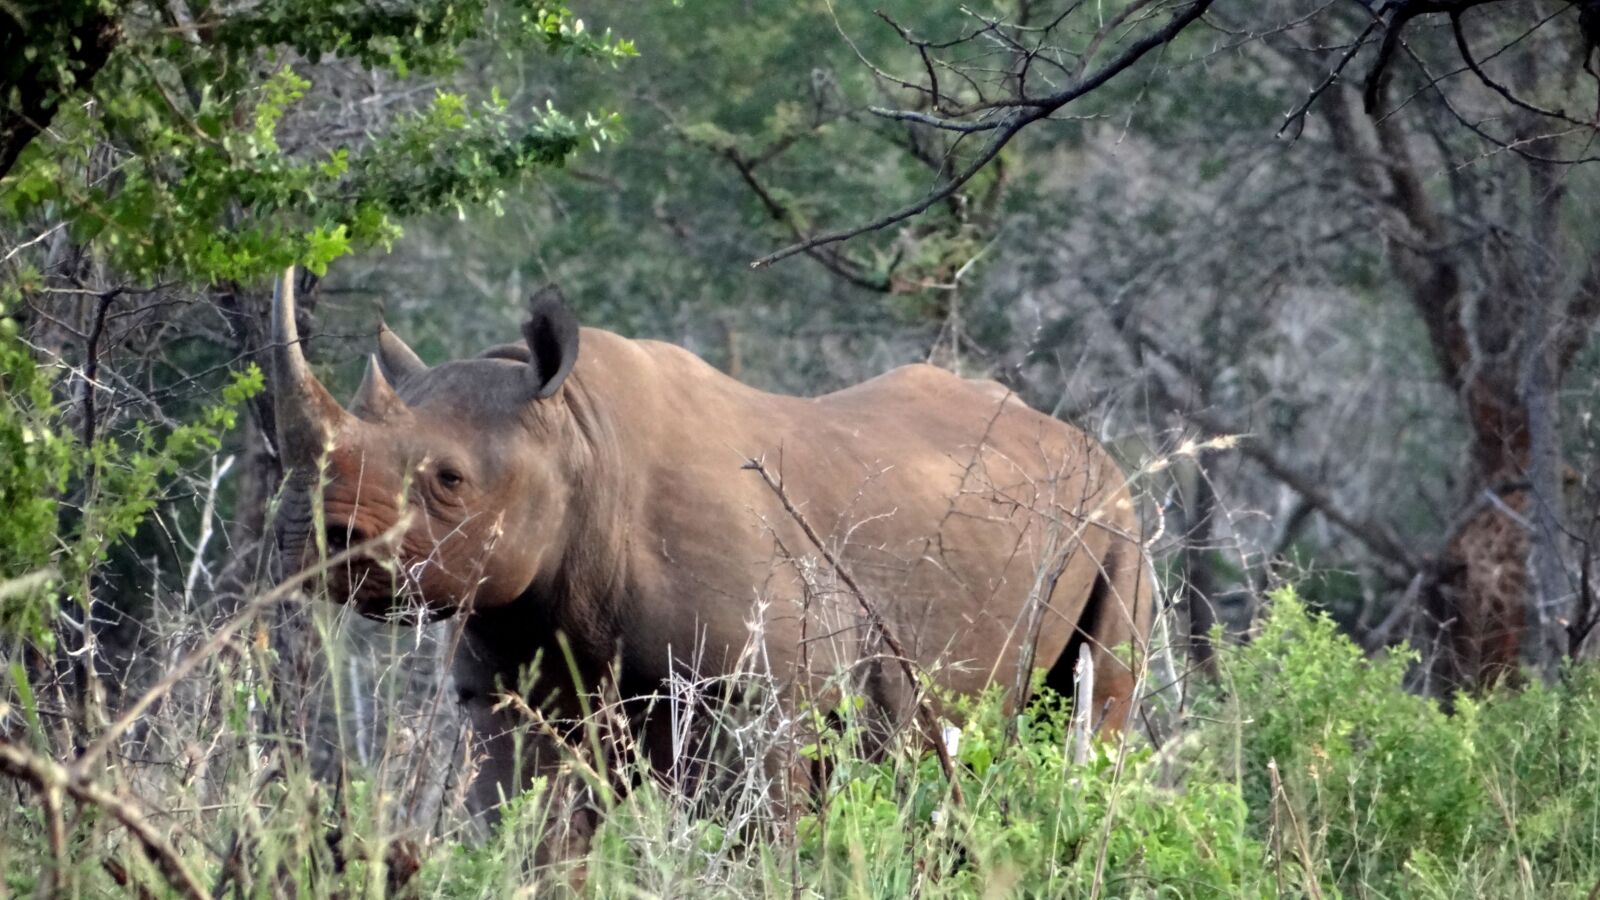 Sony Cyber-shot DSC-HX100V sample photo. Wildlife, africa, rhino photography